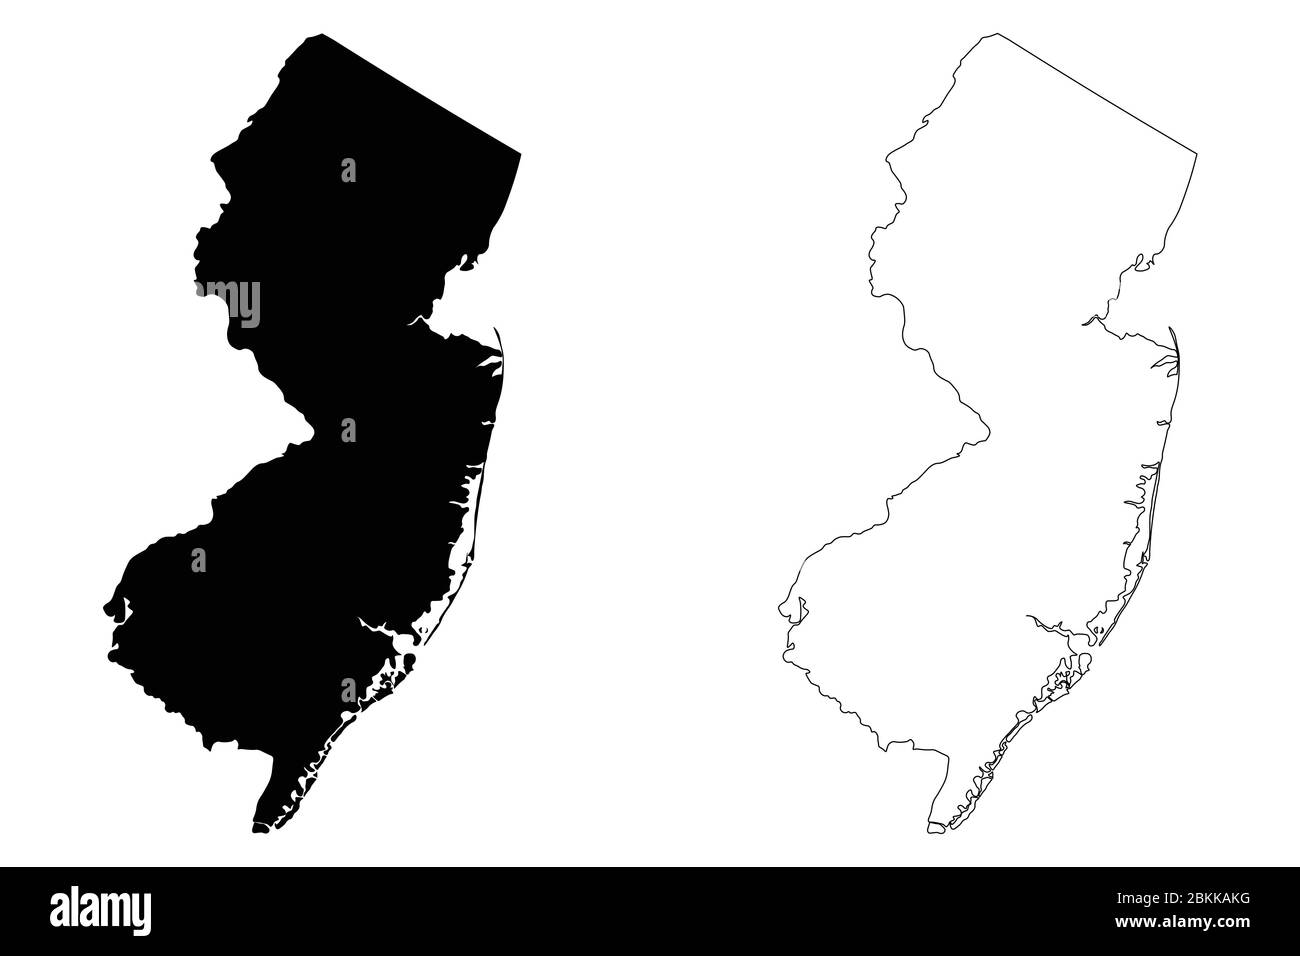 Cartes d'état New Jersey NJ. Silhouette et contour noirs isolés sur un fond blanc. Vecteur EPS Illustration de Vecteur